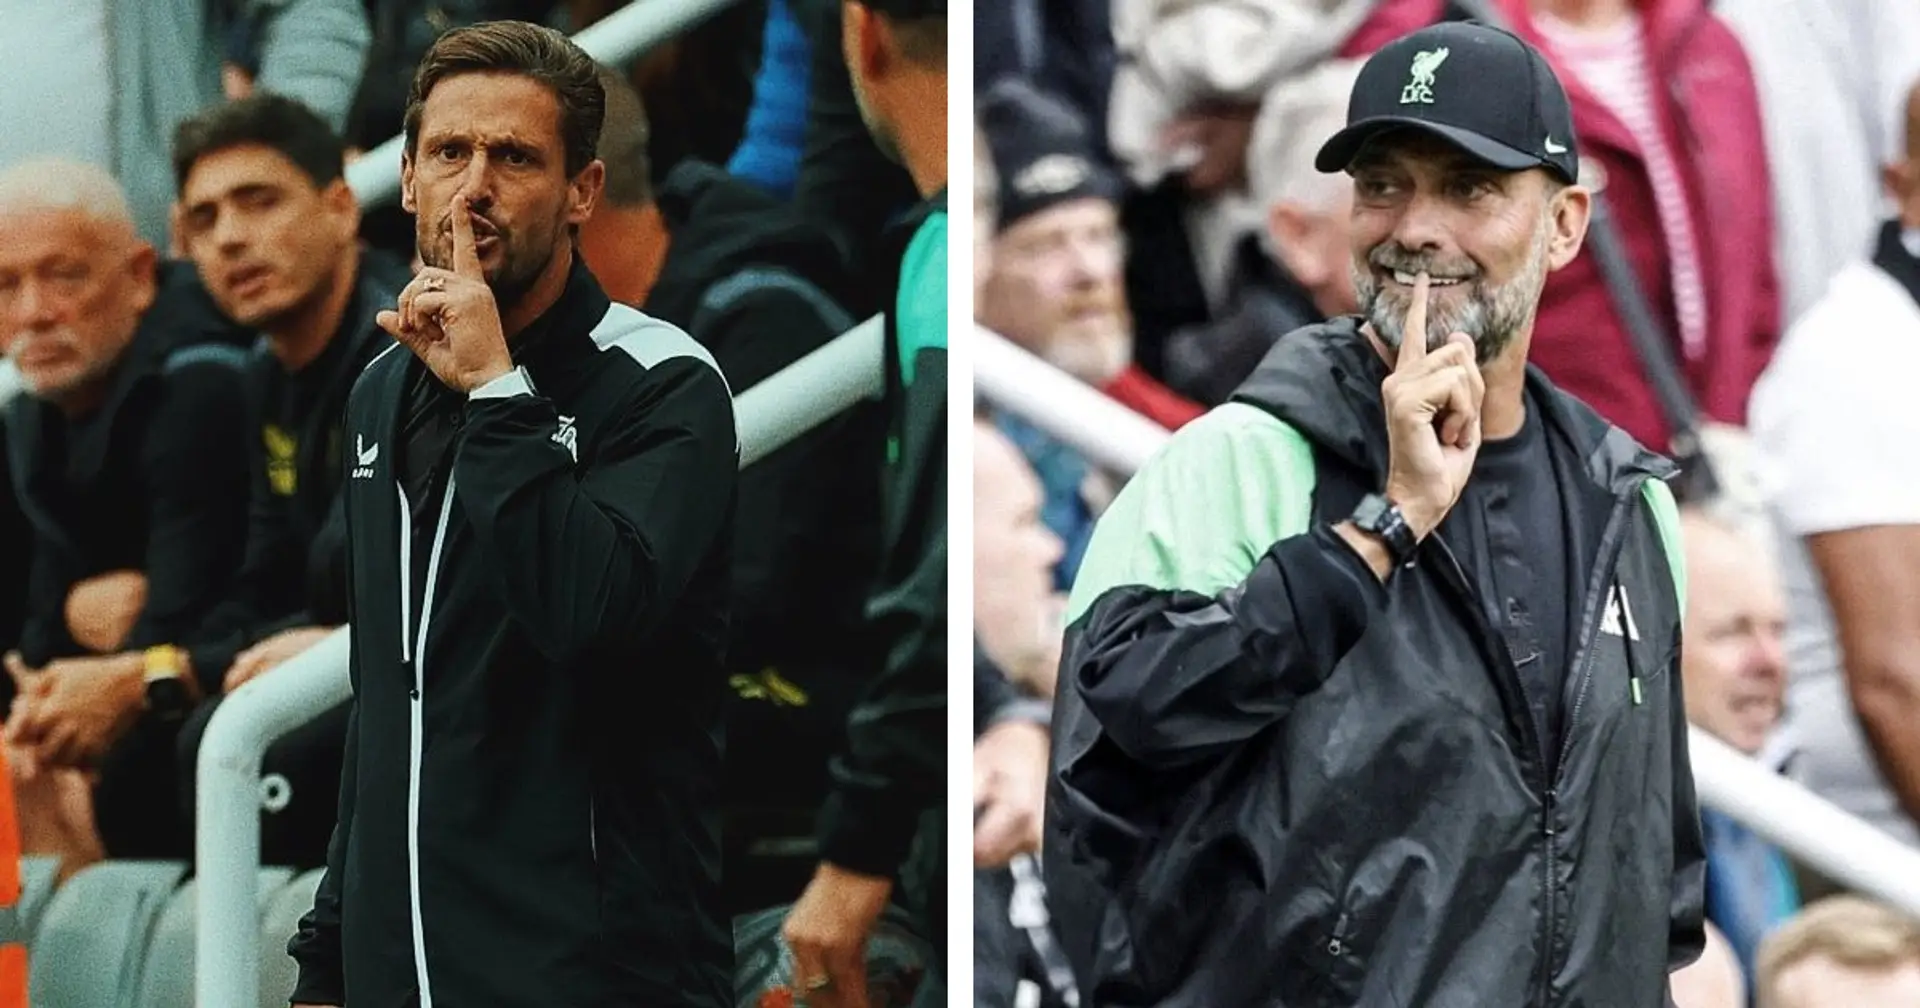 Der Co-Trainer von Newcastle macht in der ersten Halbzeit eine unflätige Geste in Richtung Klopp - so reagiert Jürgen